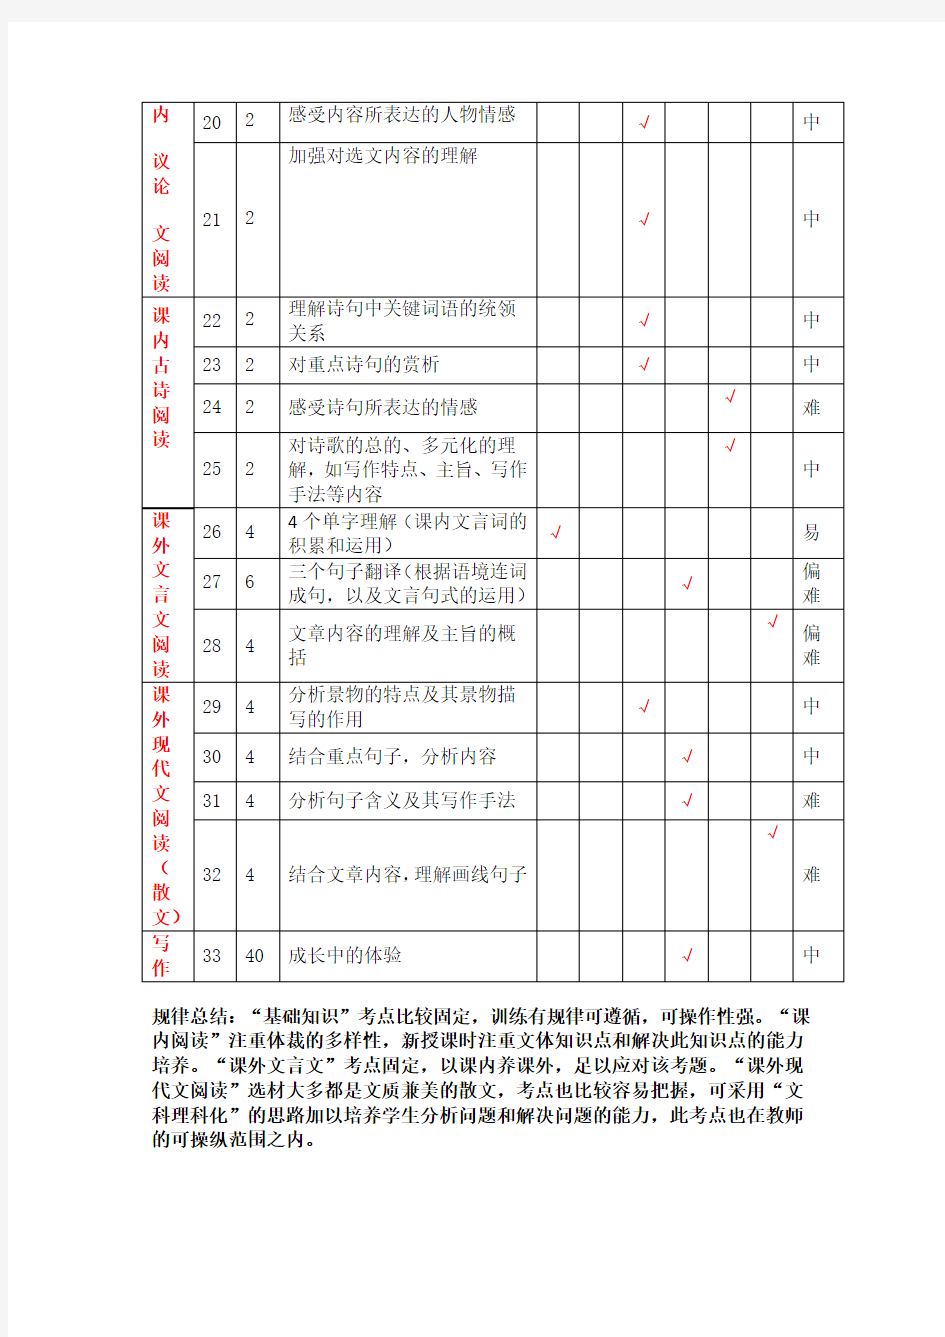 初中语文单元测试双向细目表